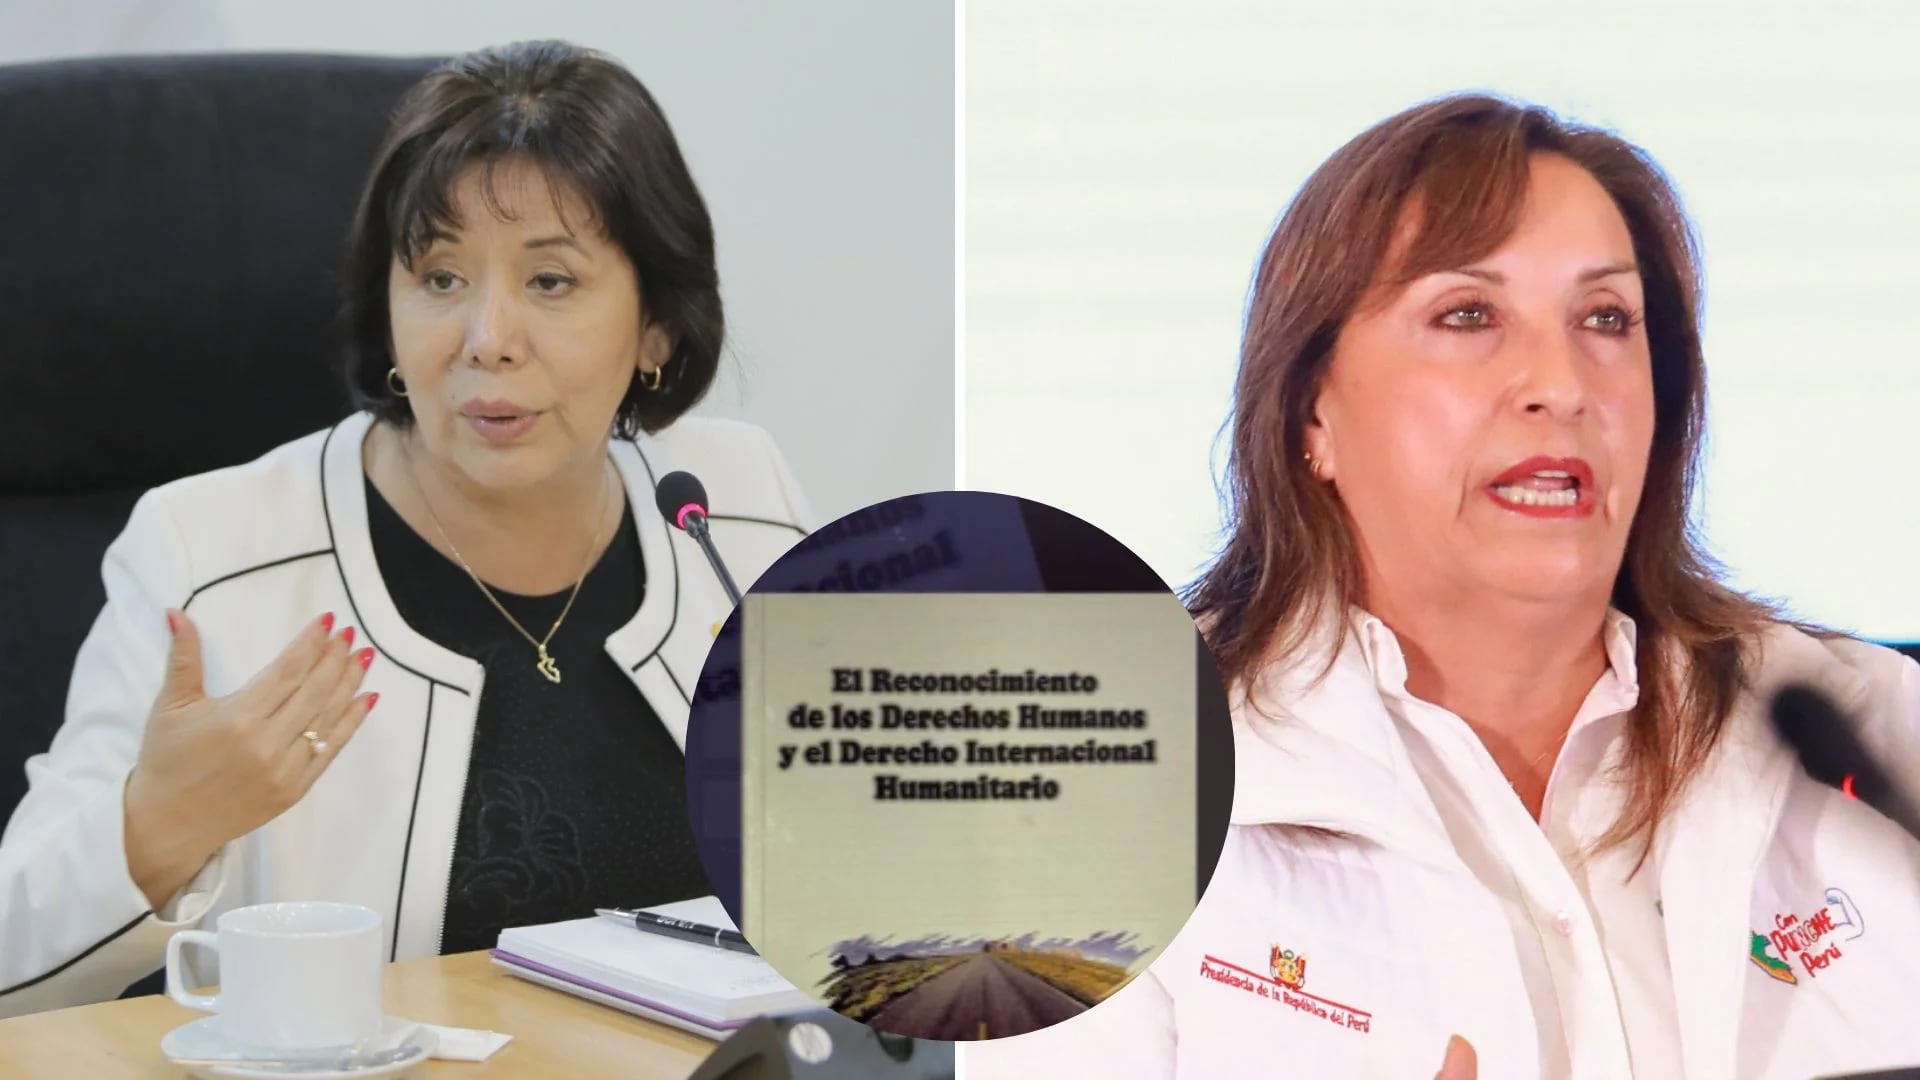 La ministra de la Mujer, Nancy Tolentino se pronunció sobre la denuncia de un presunto plagio de un libro. | Composición Infobae Perú